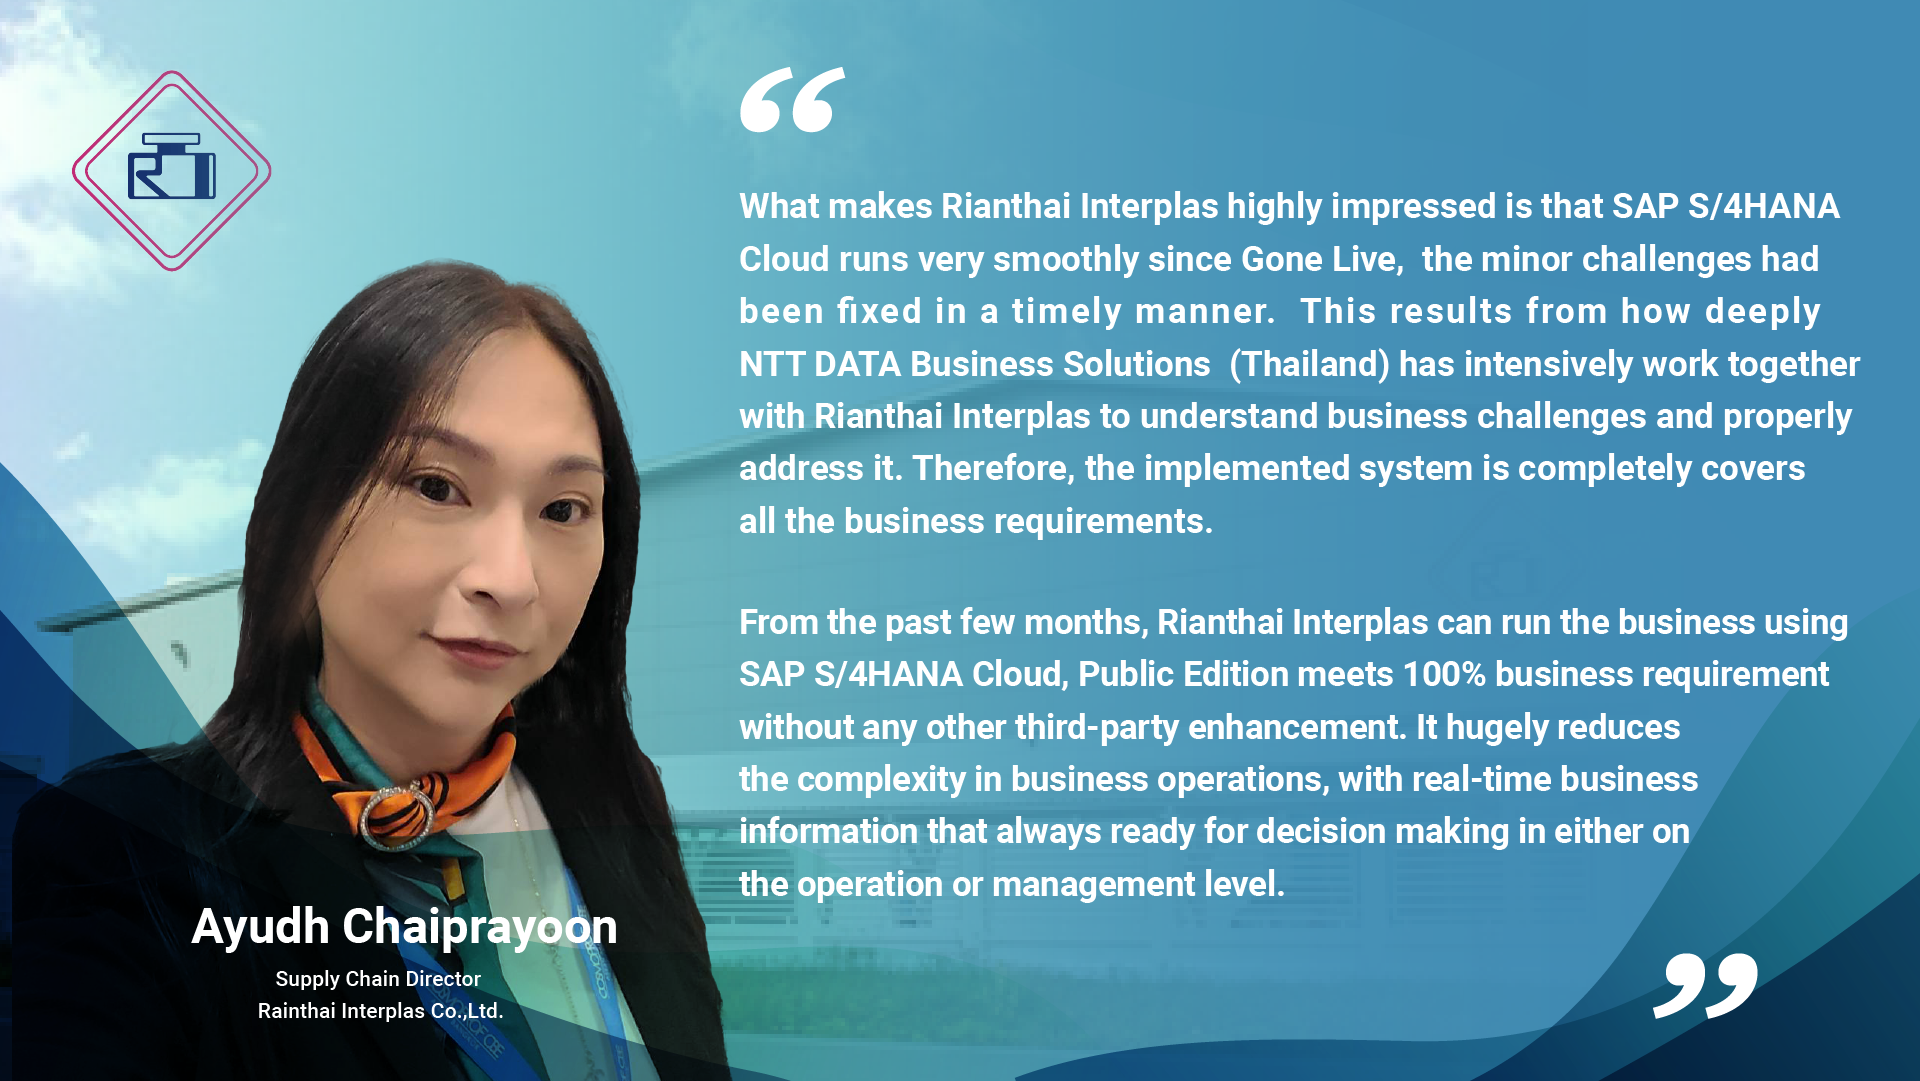 ข่าวไอที - Rianthai Interplas Masters Global Packaging Trends and Streamlines Operations with Grow with SAP, Powered by NTT DATA Business Solutions Thailand